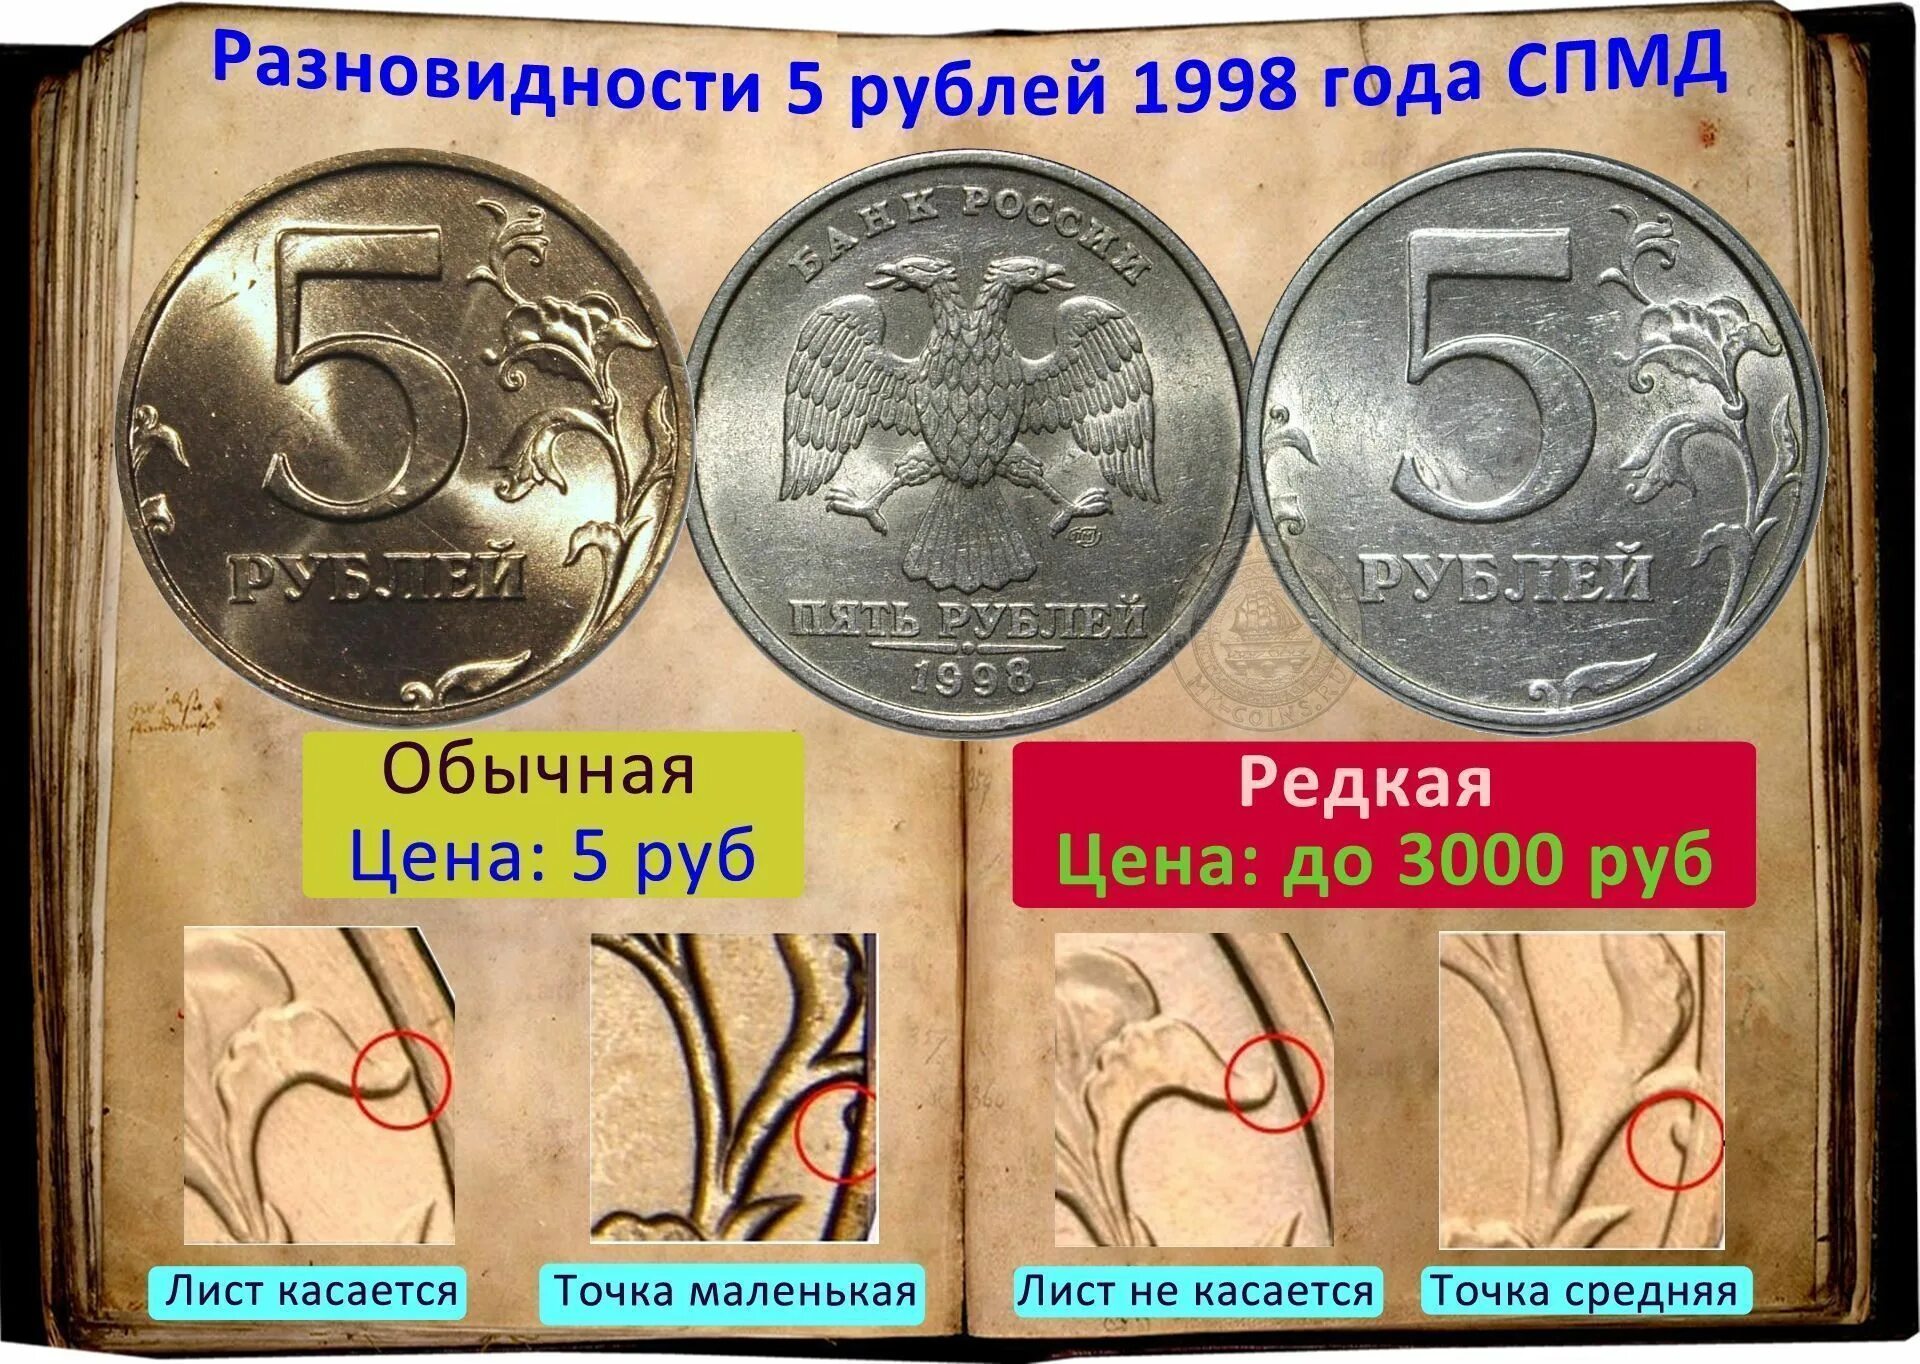 Какие монеты сейчас используются. Редкая монета 5 рублей 1998 года СПМД. Монеты СПМД 1998 год 5 рублей. Монета 5 рублей 1998 СПМД. Редкая монета 5 рублей 1998.